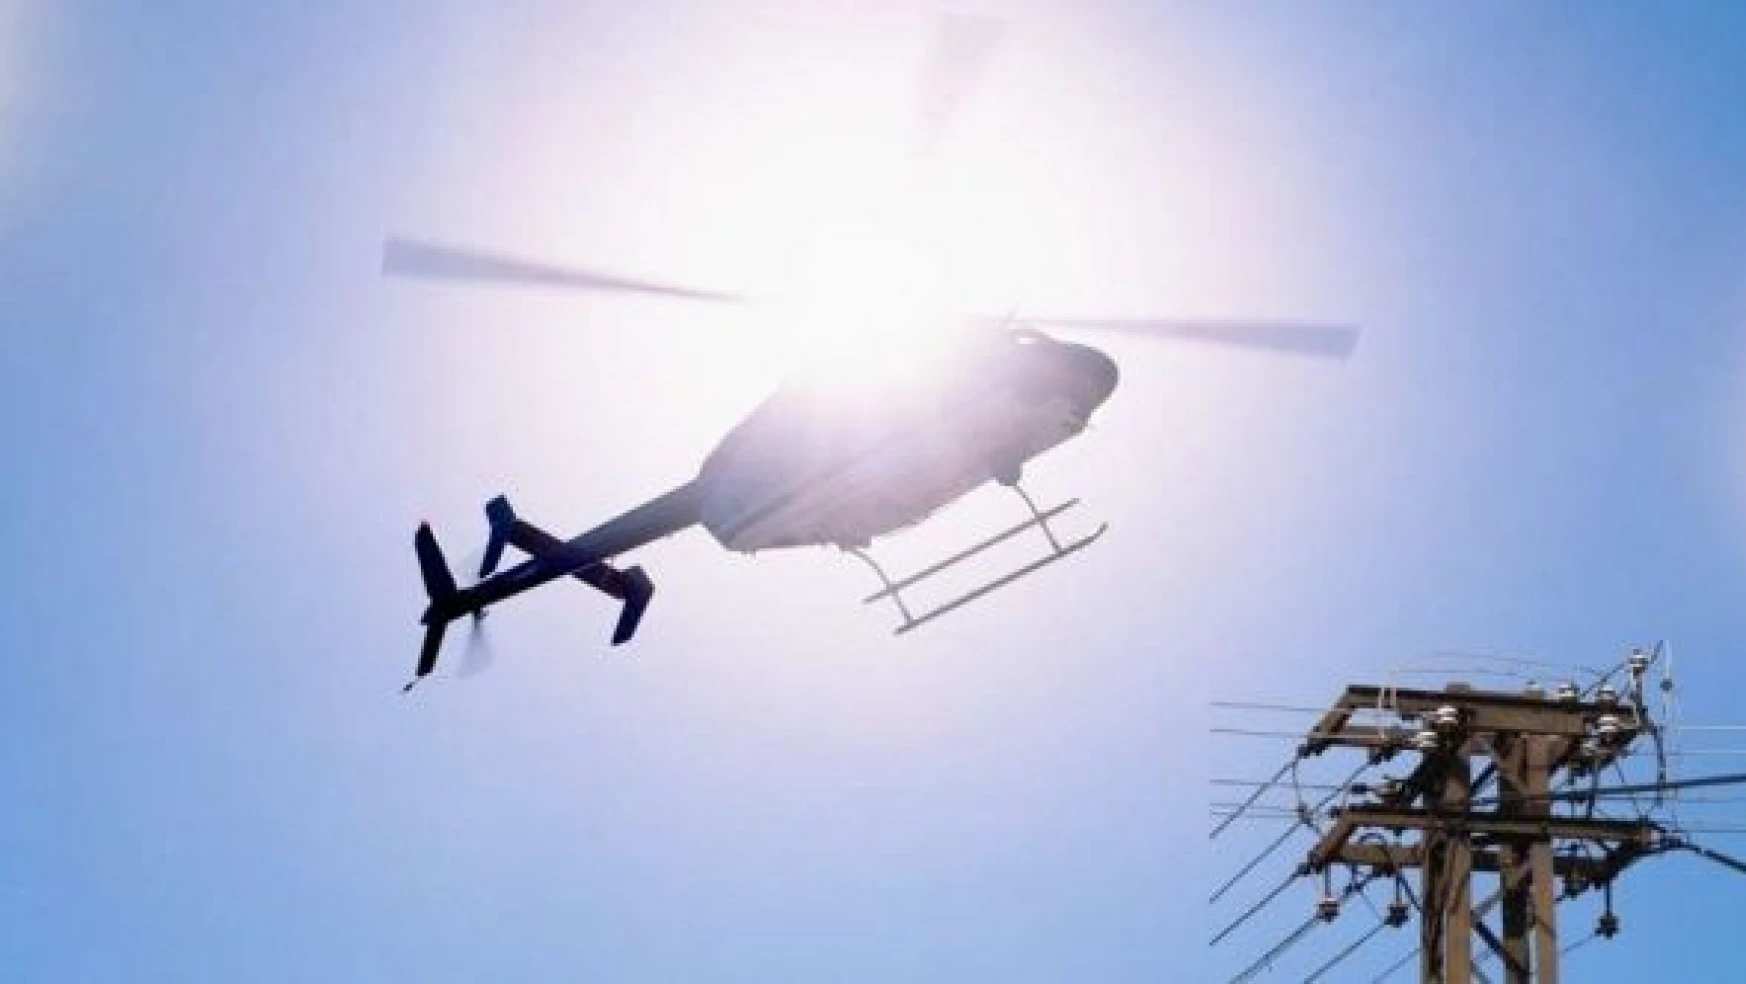 Tunceli'de elektrik arızası için helikopter havalandı!